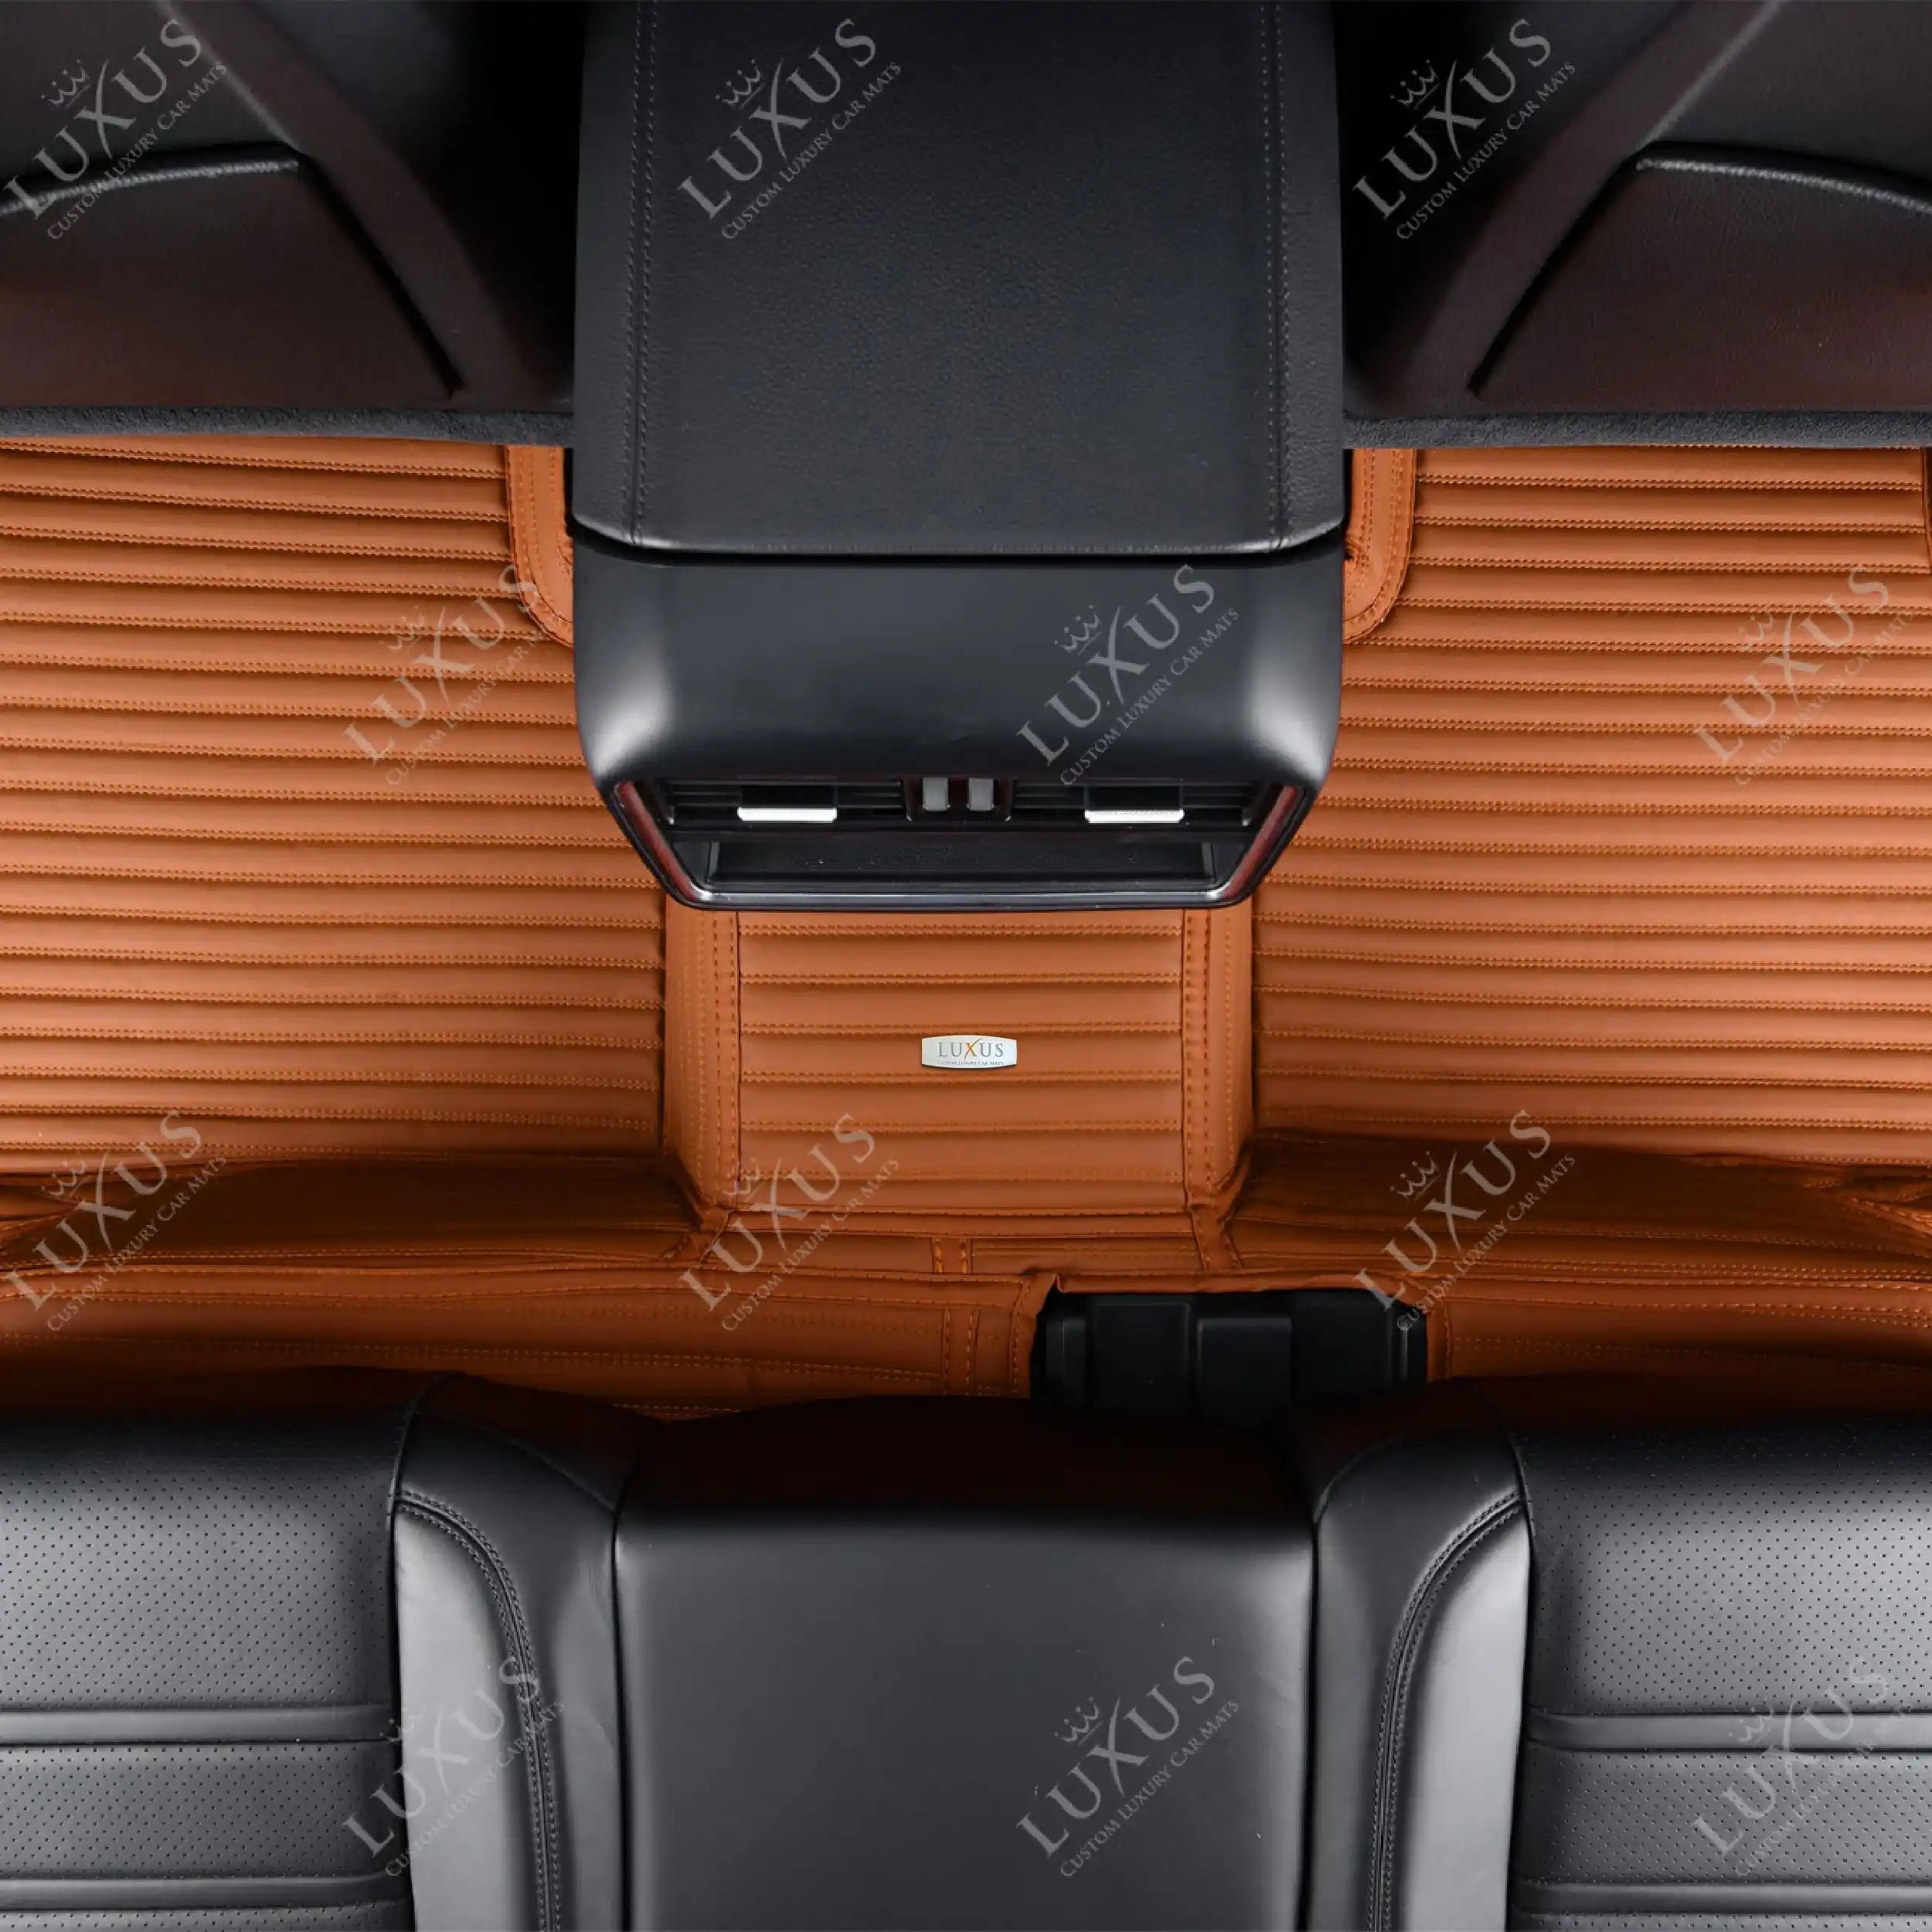 Luxus Car Mats™ - Juego de alfombrillas de lujo con rayas en marrón caramelo